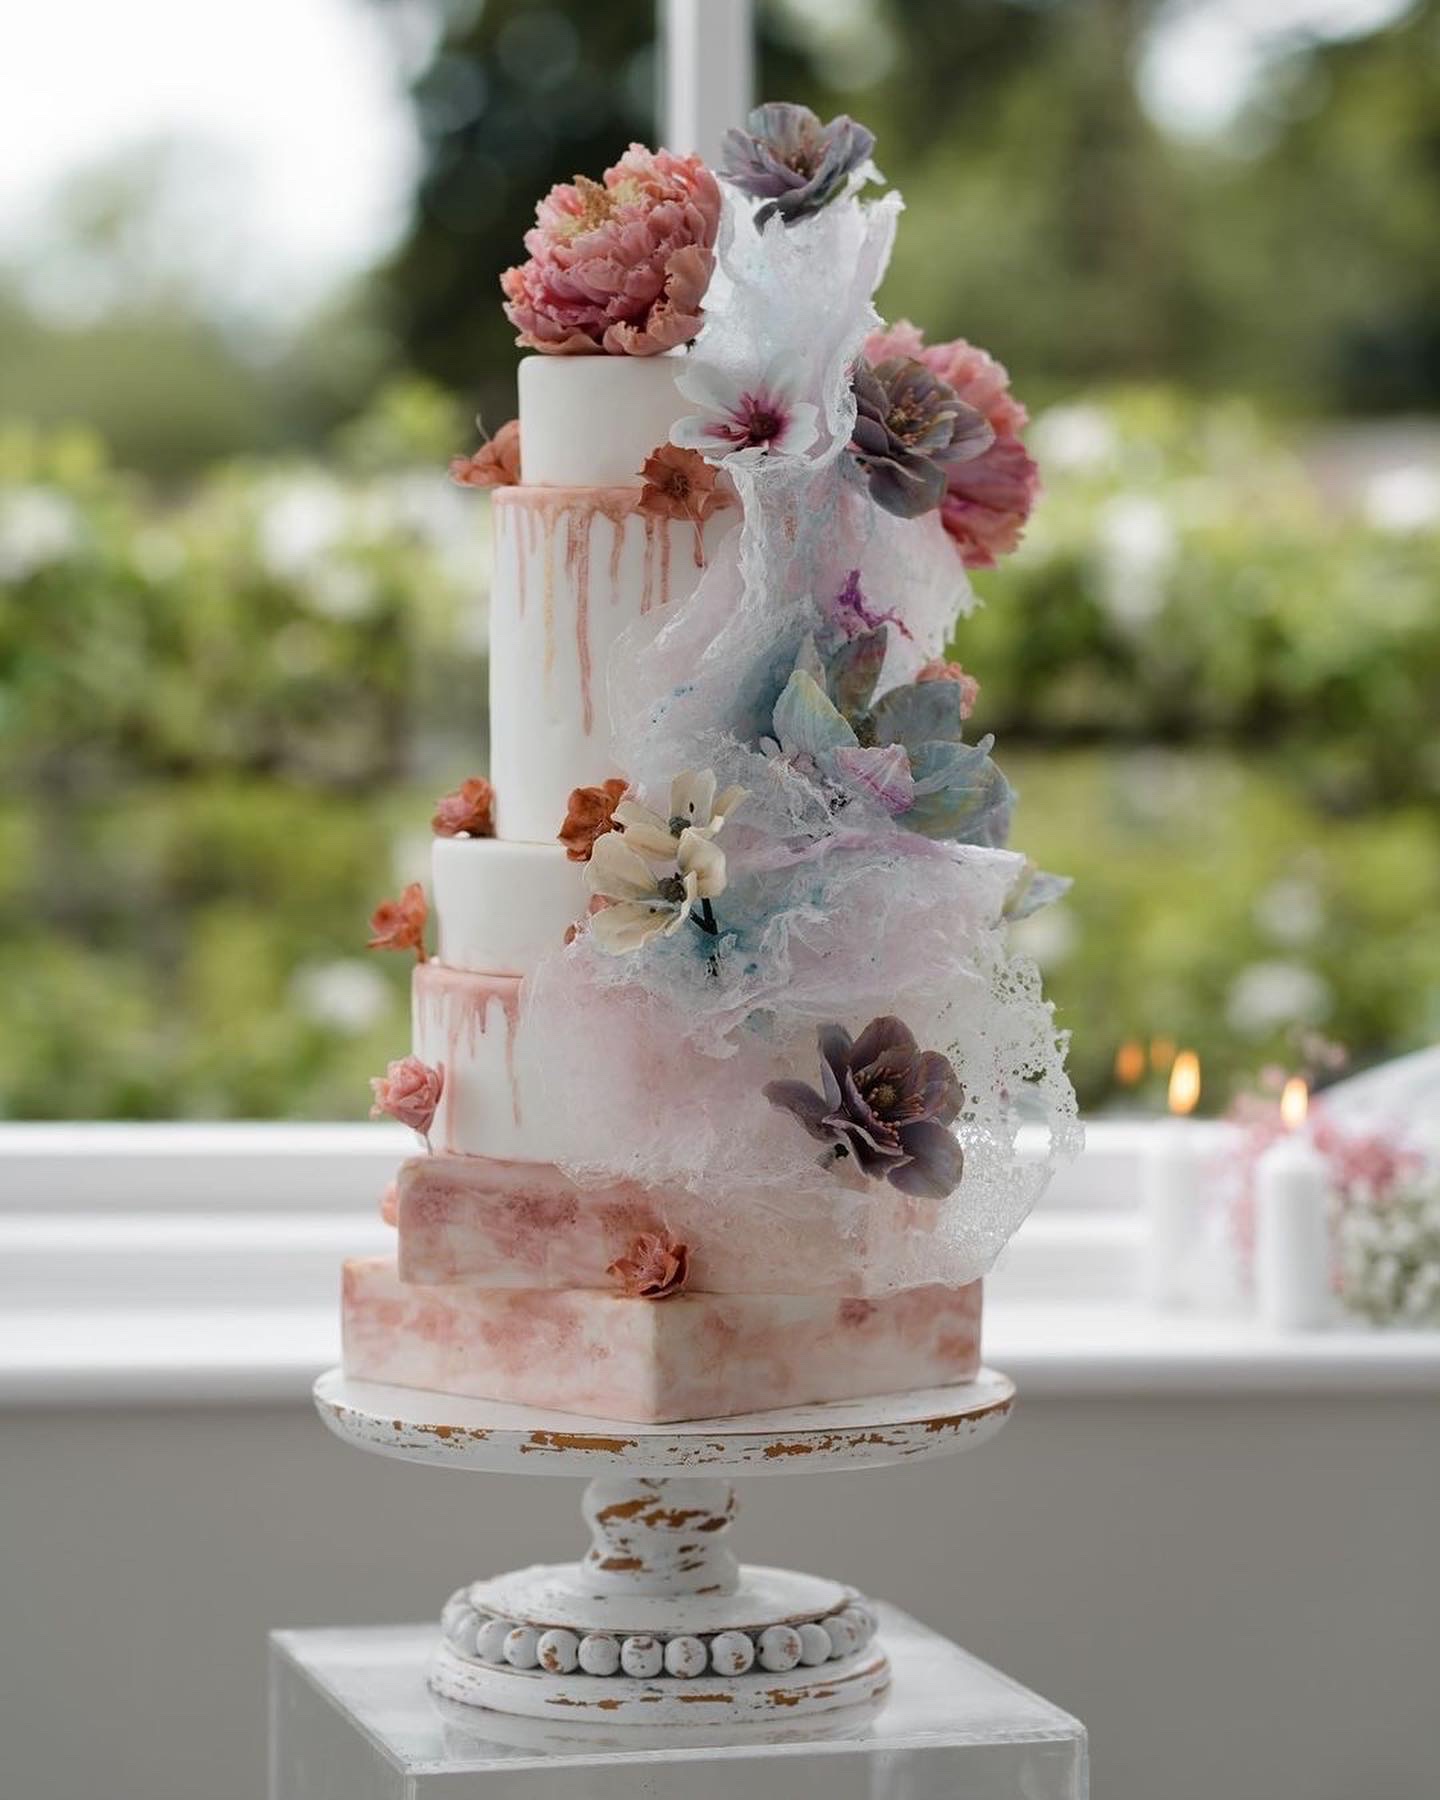 White and pink alternative layered wedding cake with botanical decoration. Botanical Cakes. Image by Adam Hudson Photography